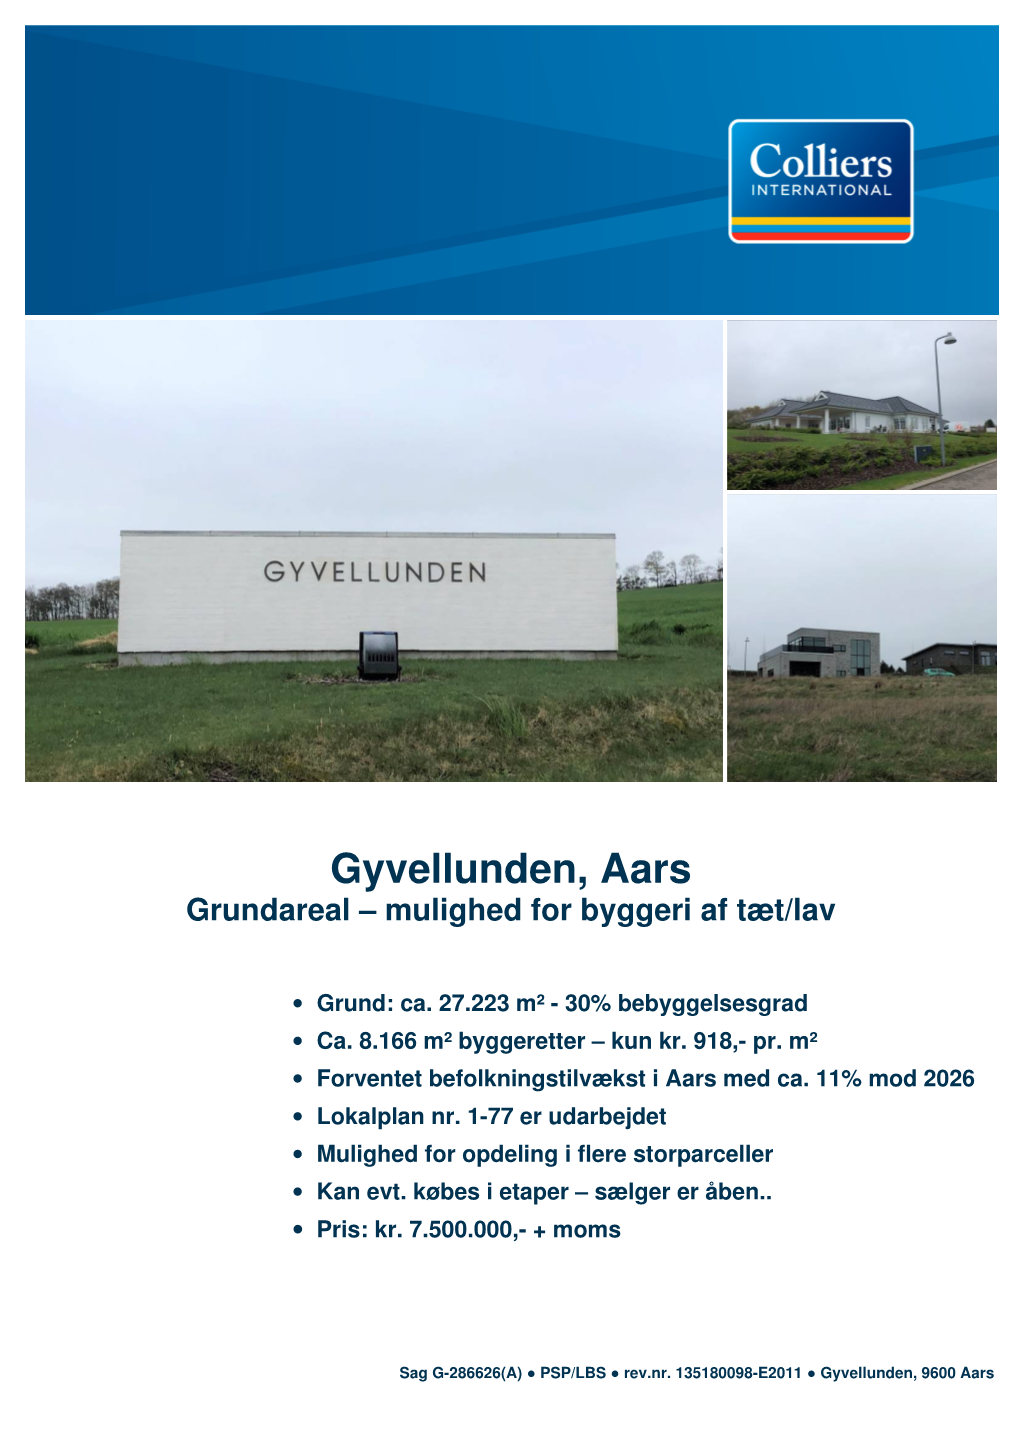 Gyvellunden, Aars Grundareal – Mulighed for Byggeri Af Tæt/Lav